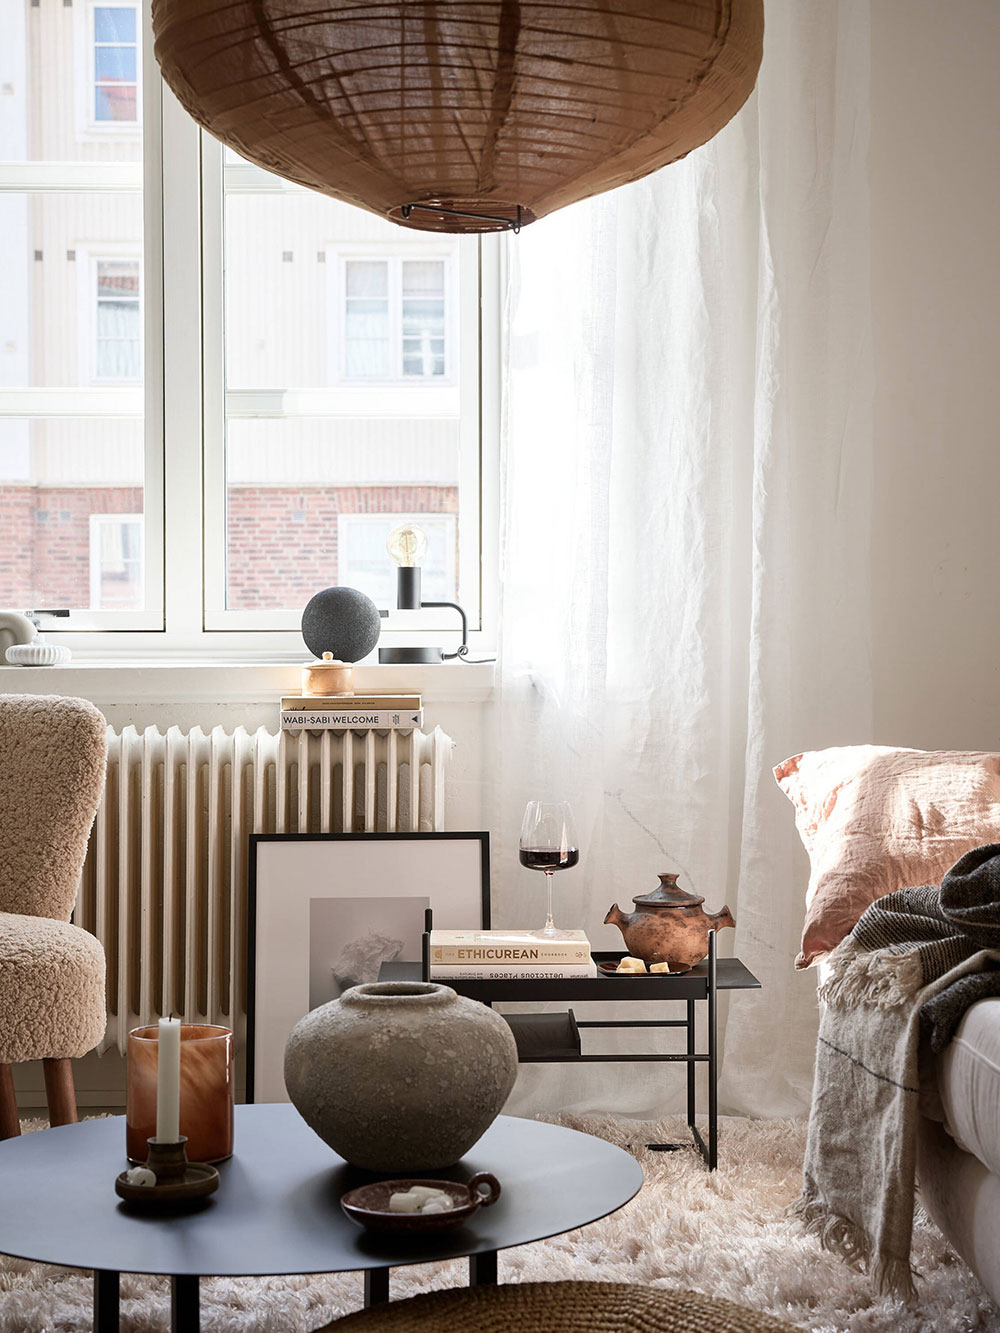 Тёплая атмосфера в двухкомнатной квартире в Швеции (38 кв. м)